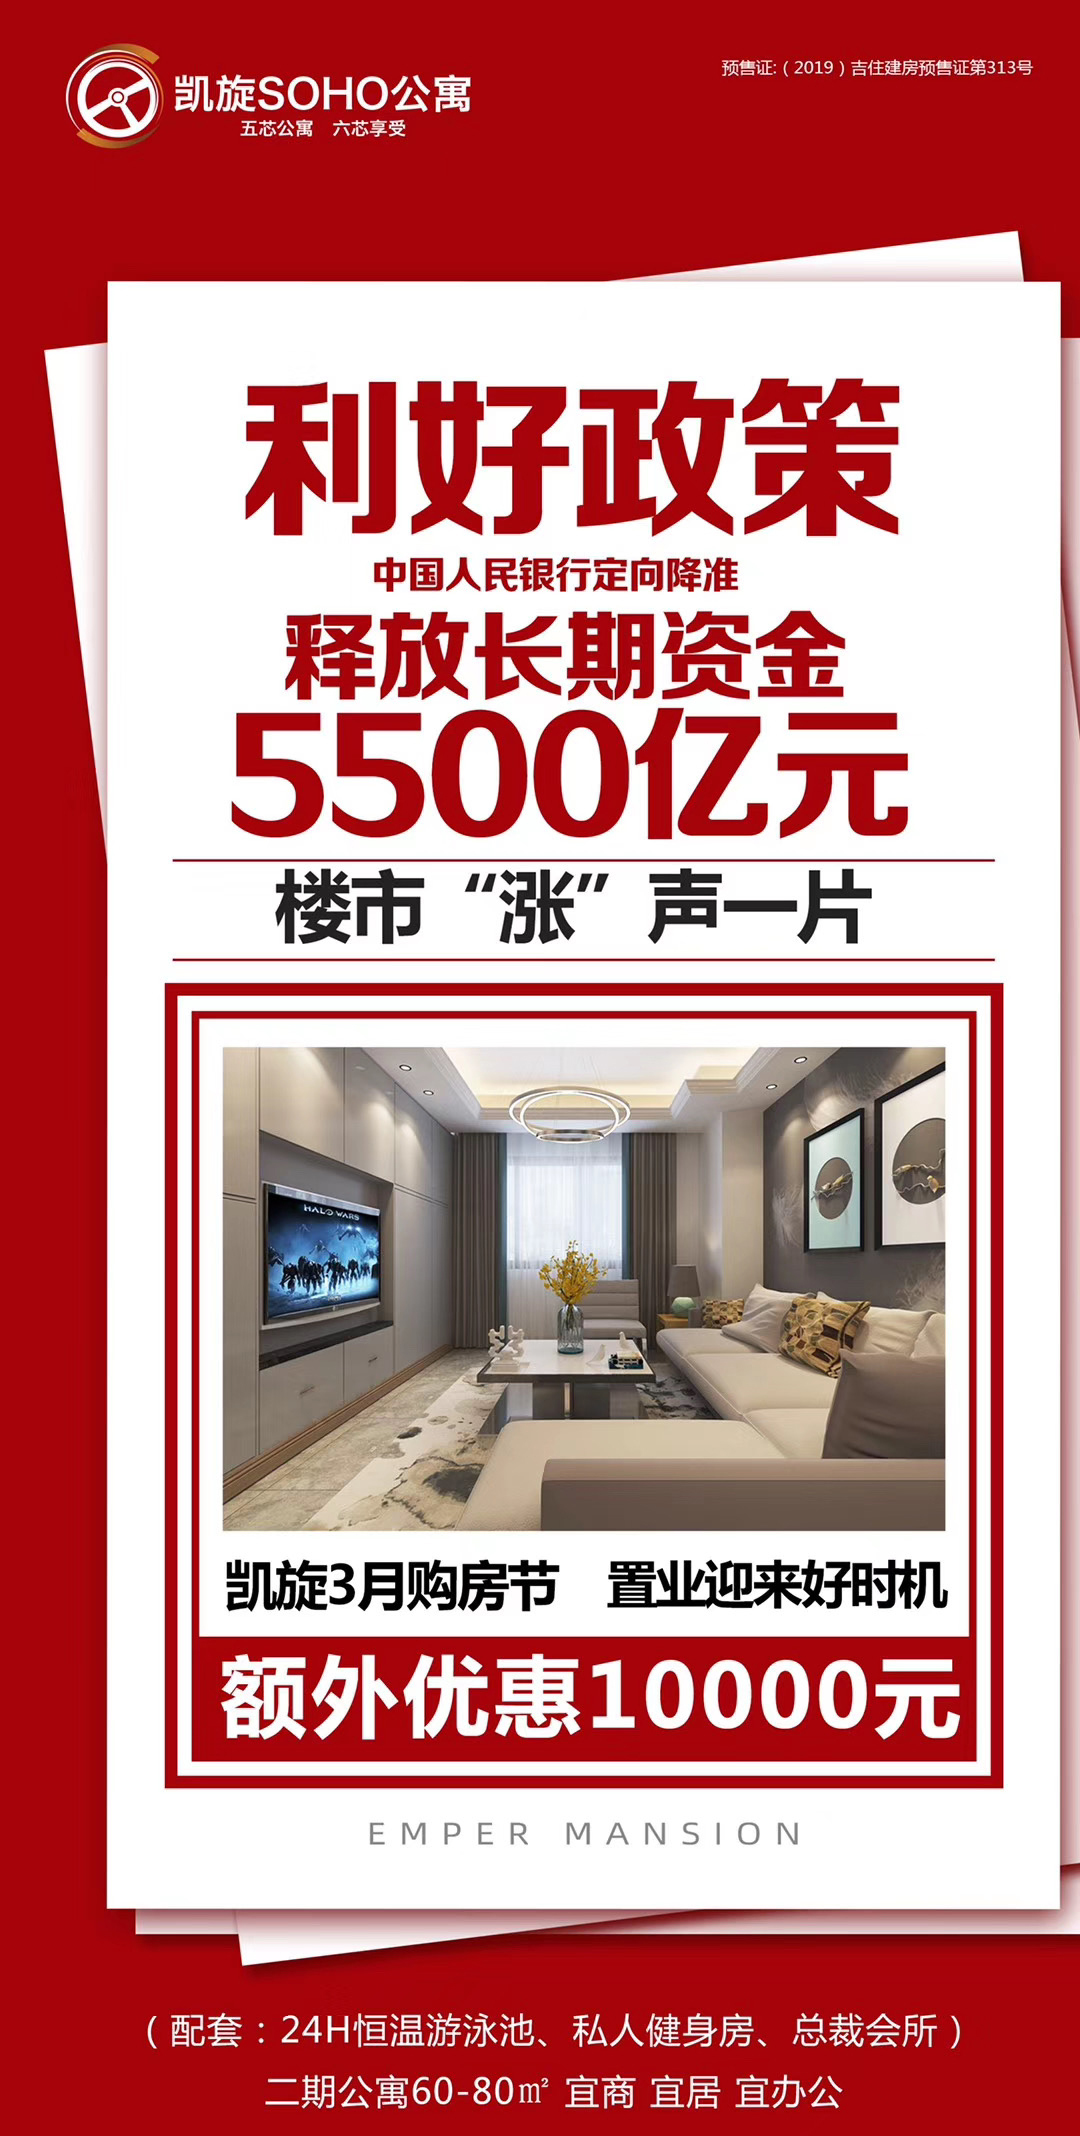 【凯旋SOHO公寓】央行降准 5500亿来袭 三月购房节 买房正当时 优惠一万元